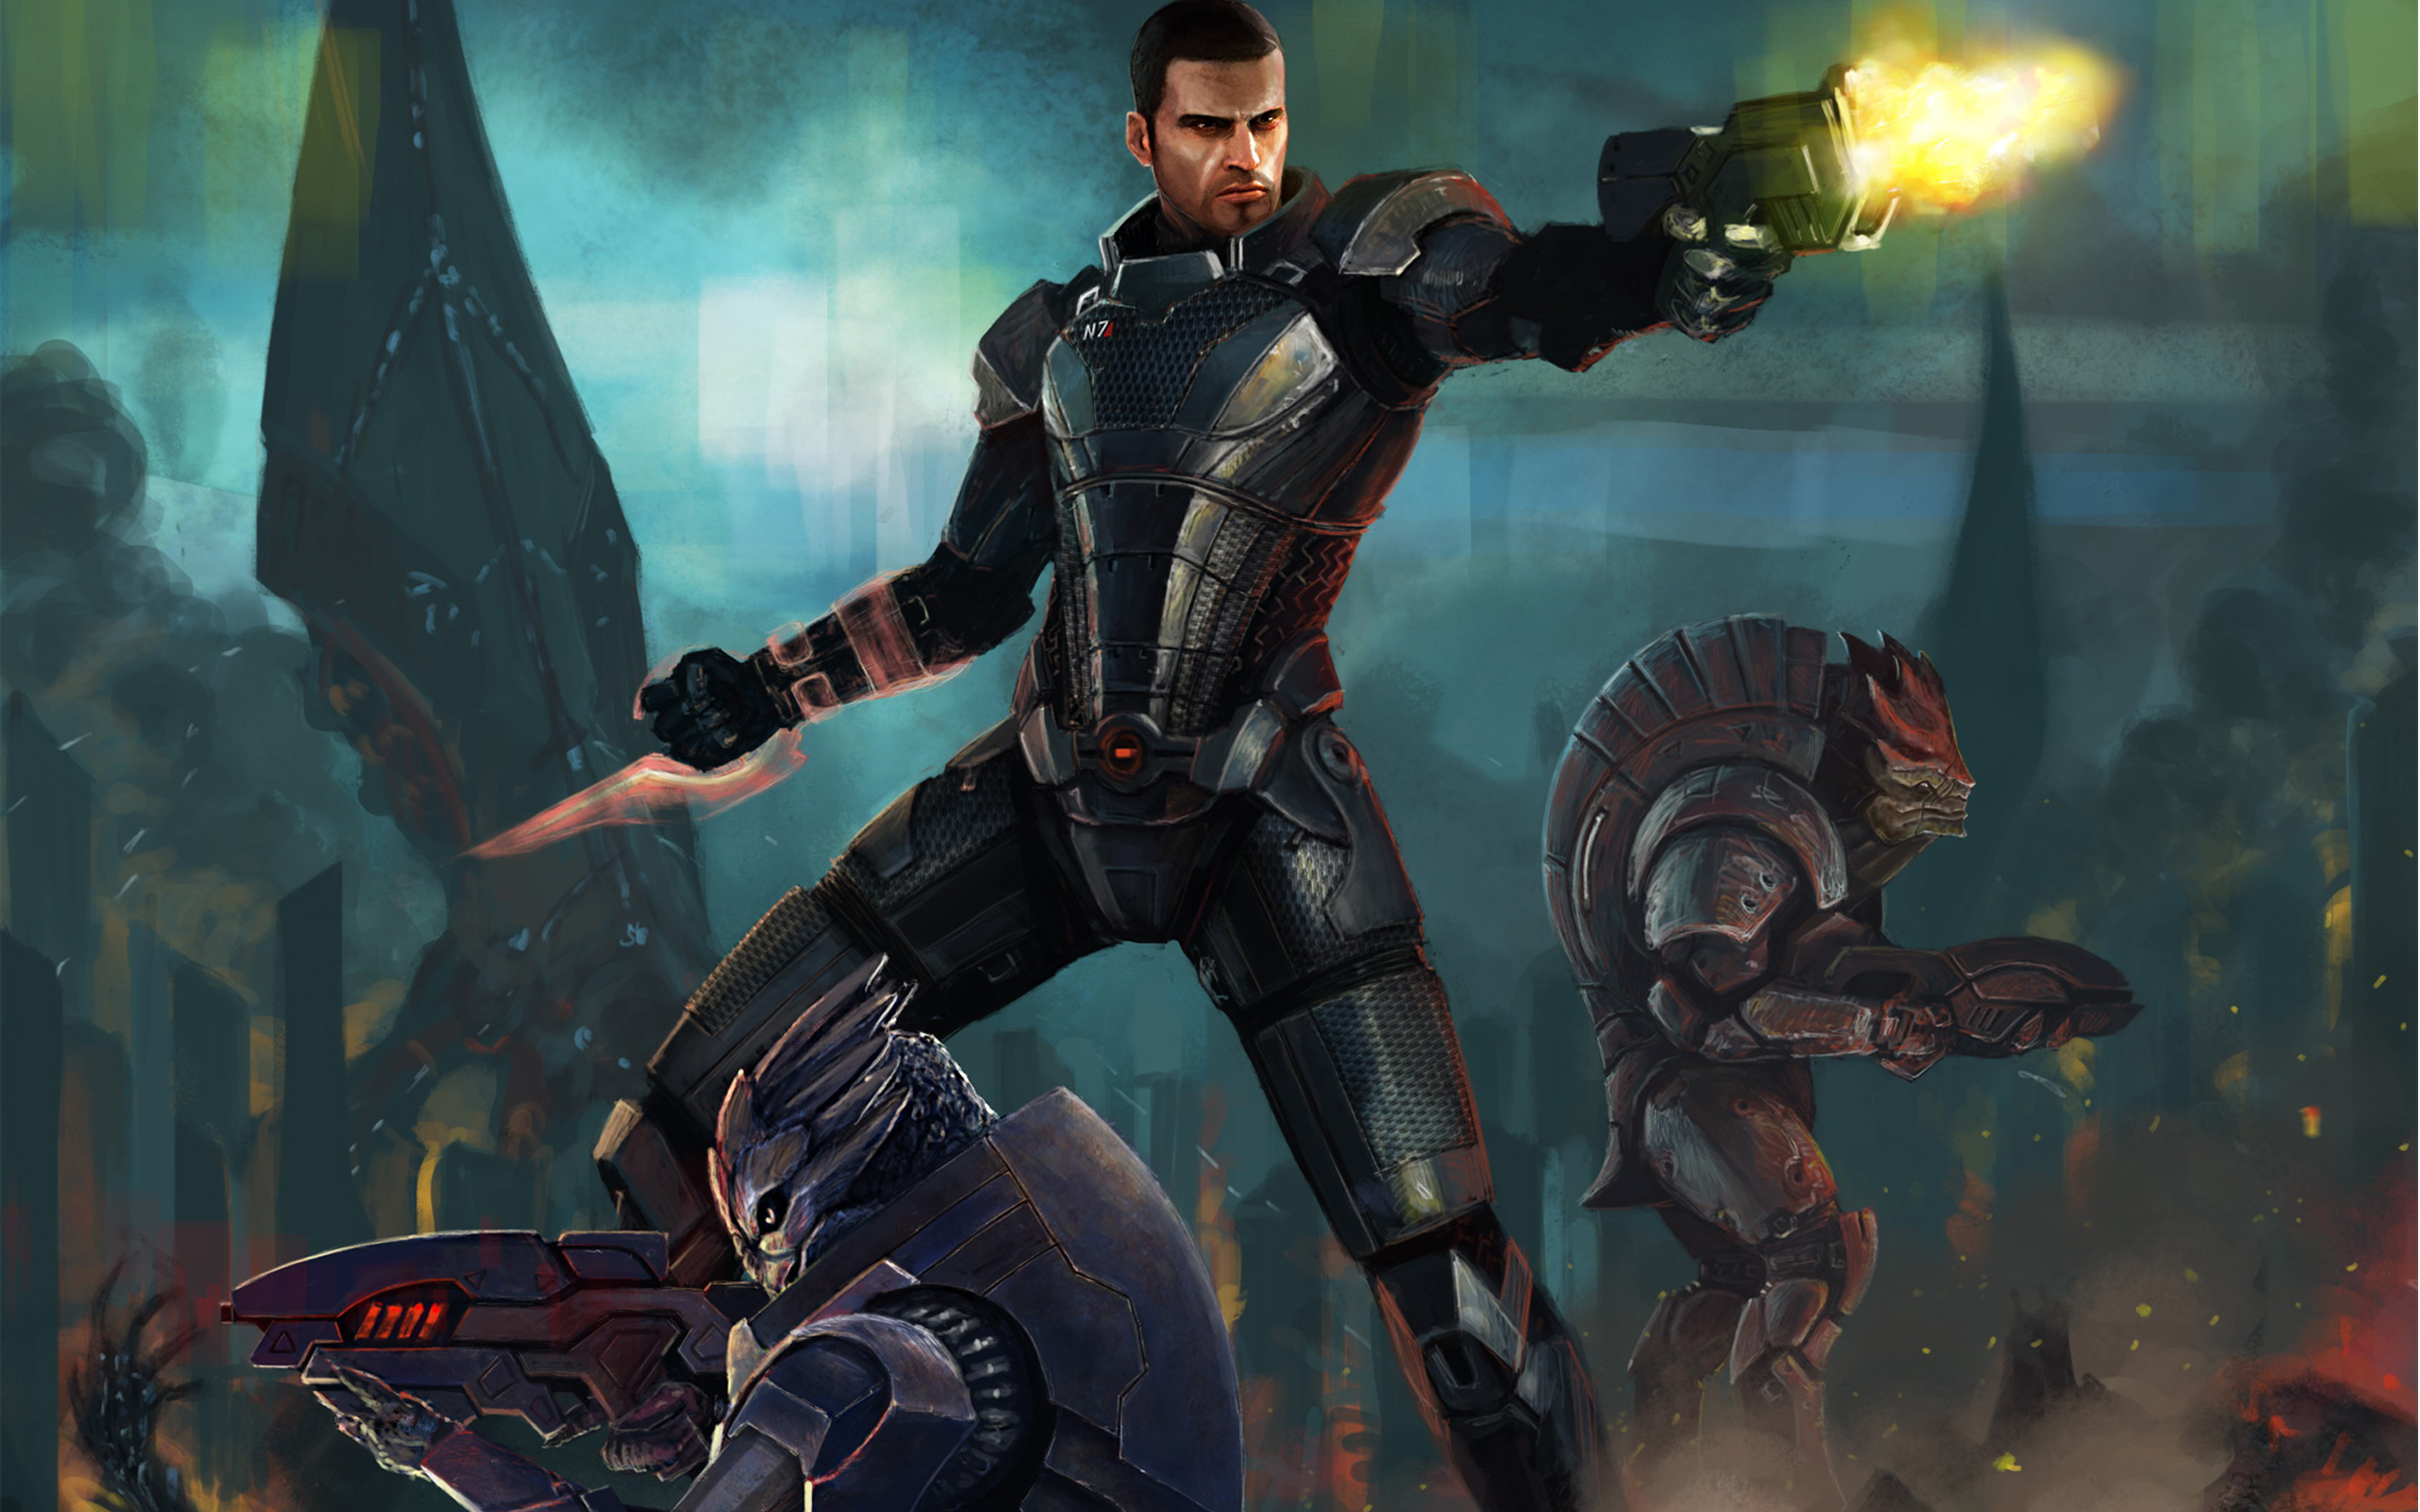 Immagini Mass Effect Mass Effect 3 Videogiochi gioco